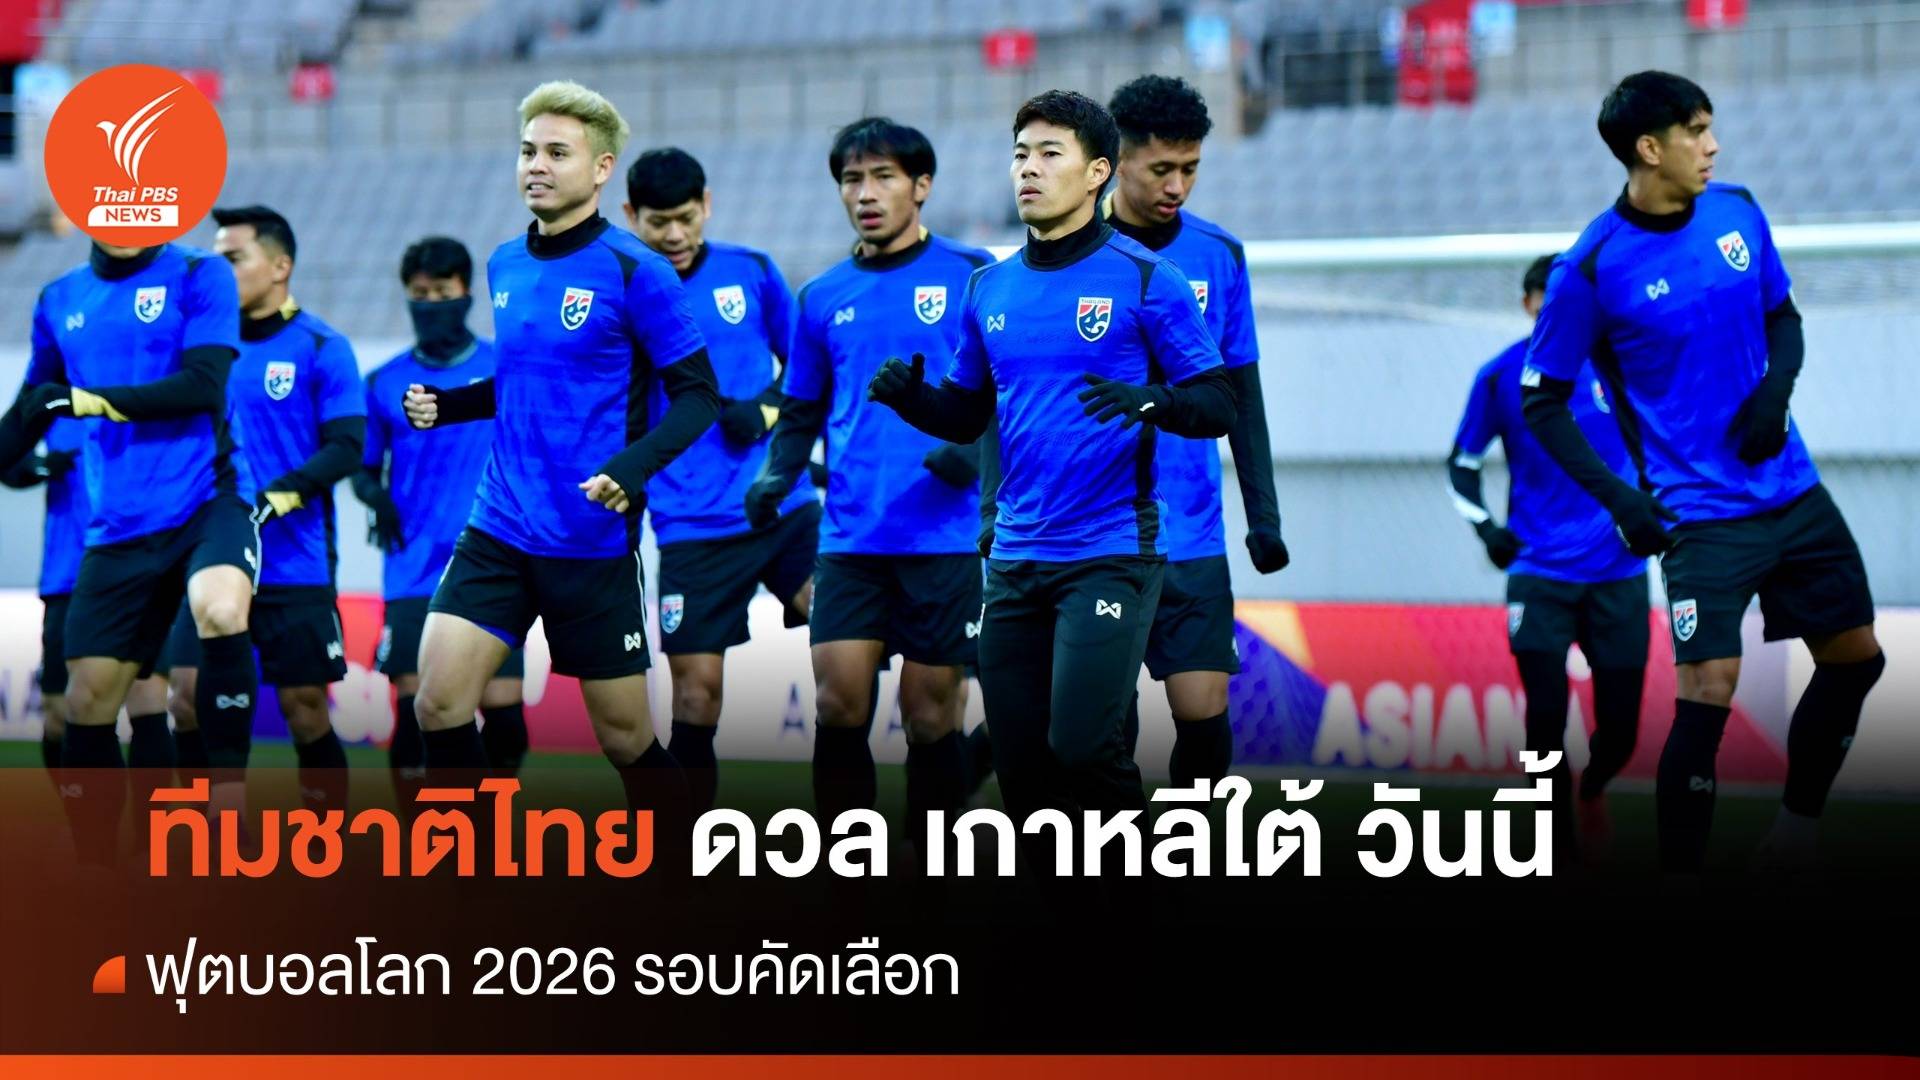 ดูบอลสด ทีมชาติไทย ดวล เกาหลีใต้ ฟุตบอลโลก 2026 รอบคัดเลือก วันนี้ 